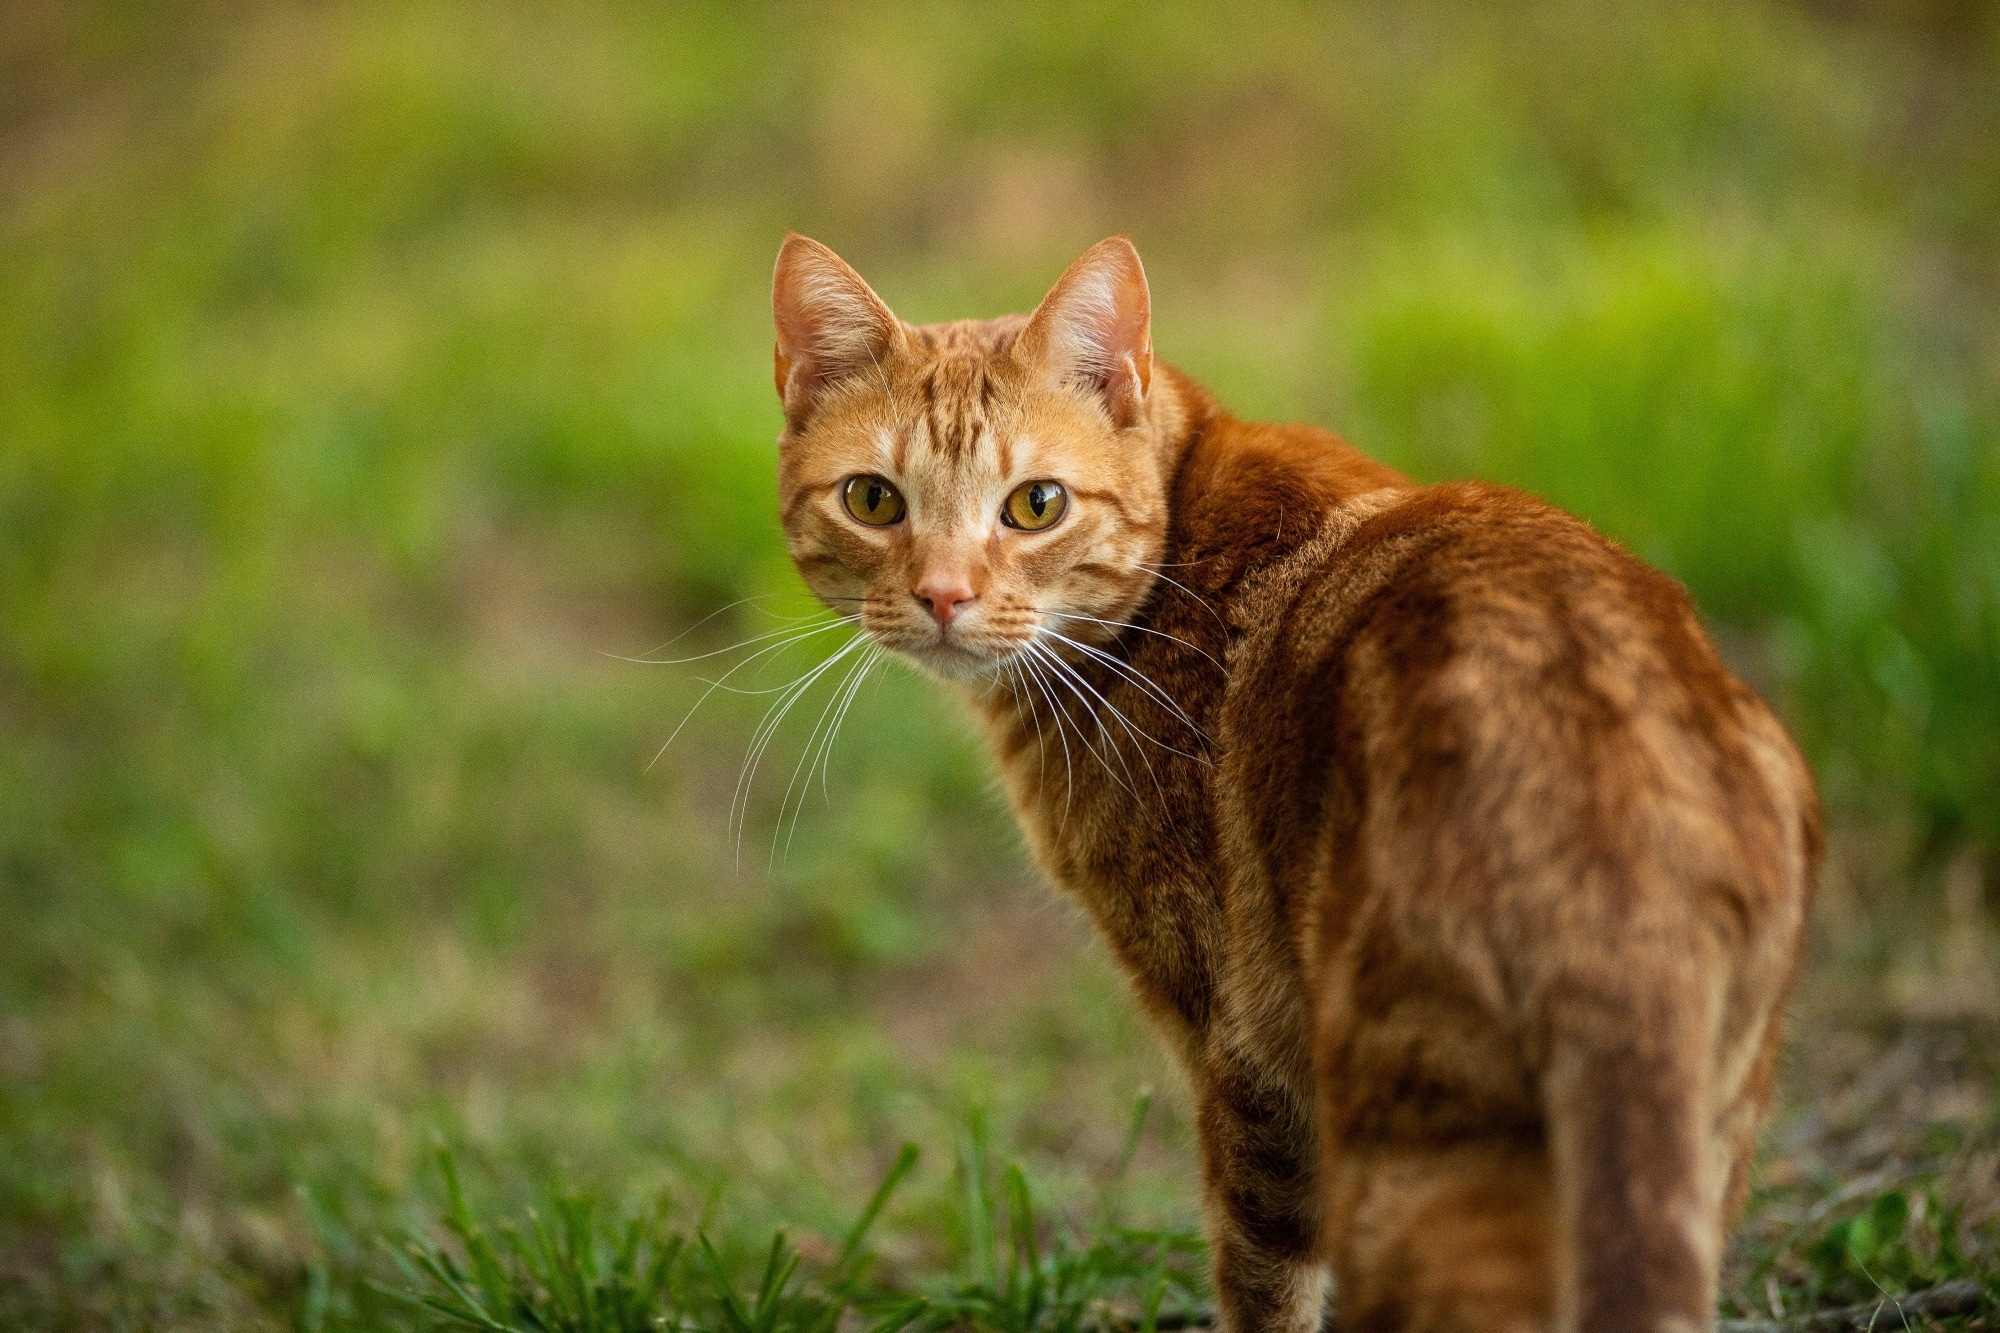 مطالعه: افزایش شیوع SARS-CoV-2 و الگوهای خنثی سازی آنتی بادی متقاطع در گربه های خانگی انگلستان.  اعتبار تصویر: Gunnar Rathbun/Shutterstock